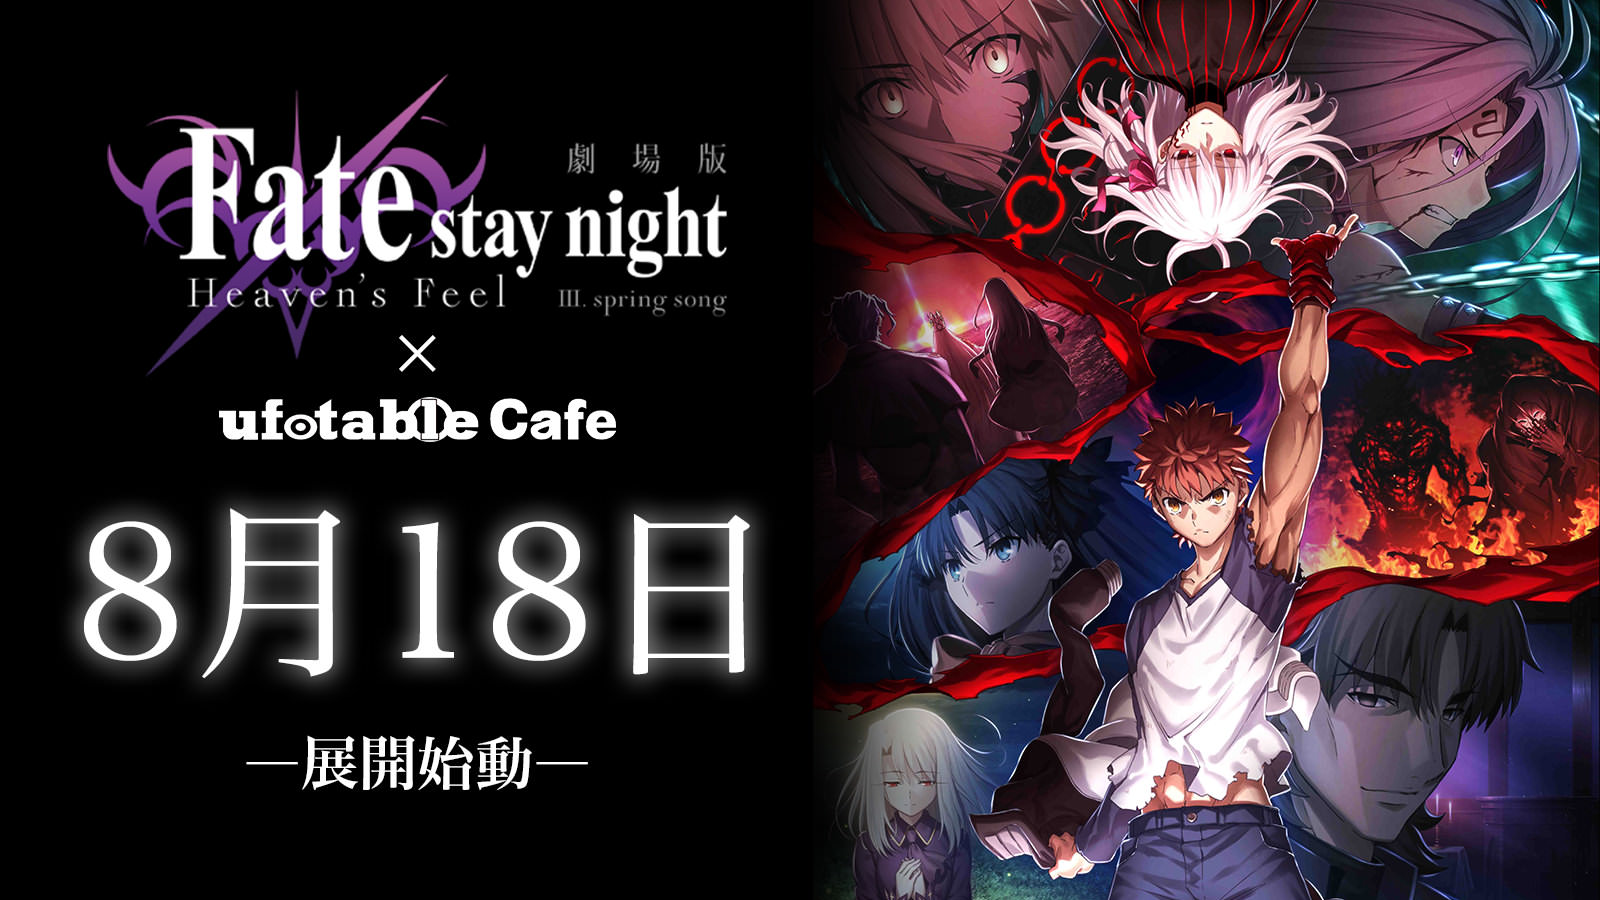 劇場版Fate/stay night × ufotable Cafe5店舗 9.6までコラボカフェ開催中!